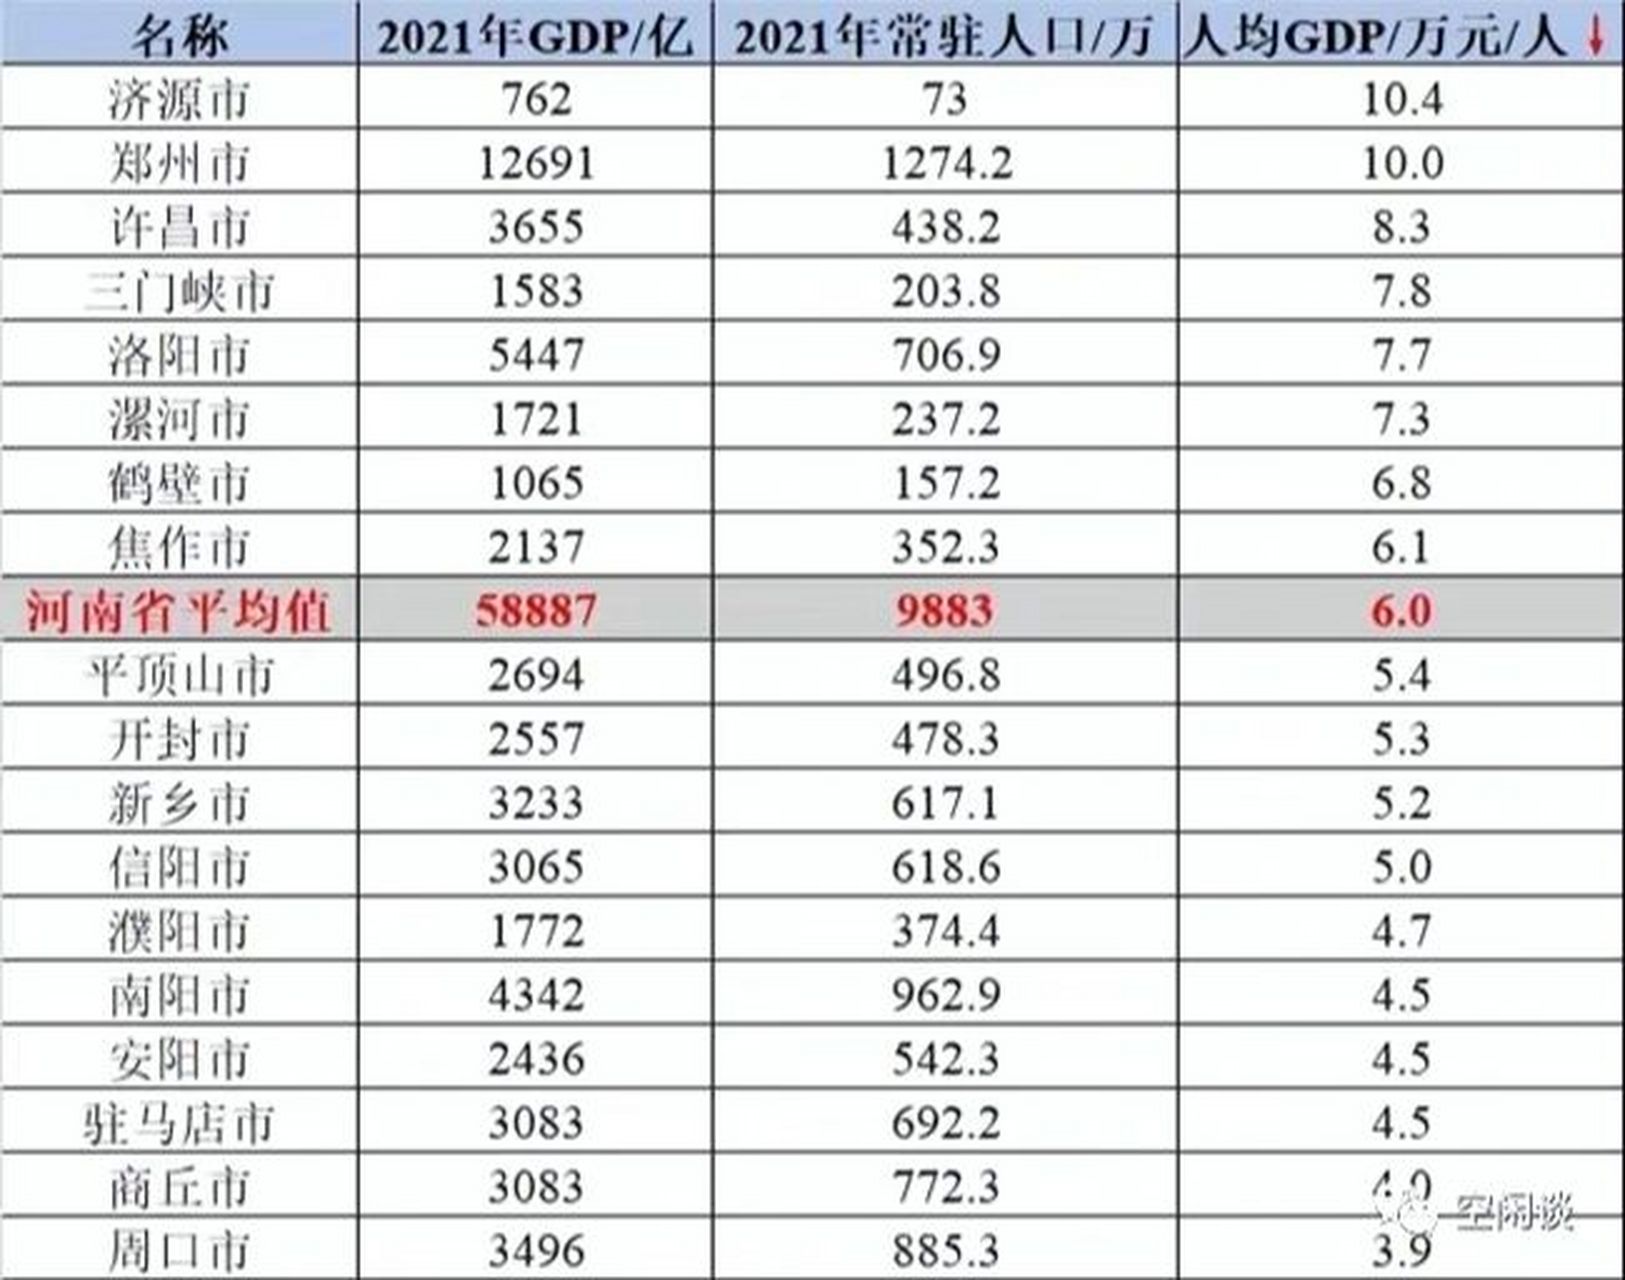 河南城市人均gdp排名 济源,104万元,富裕县城 郑州,10